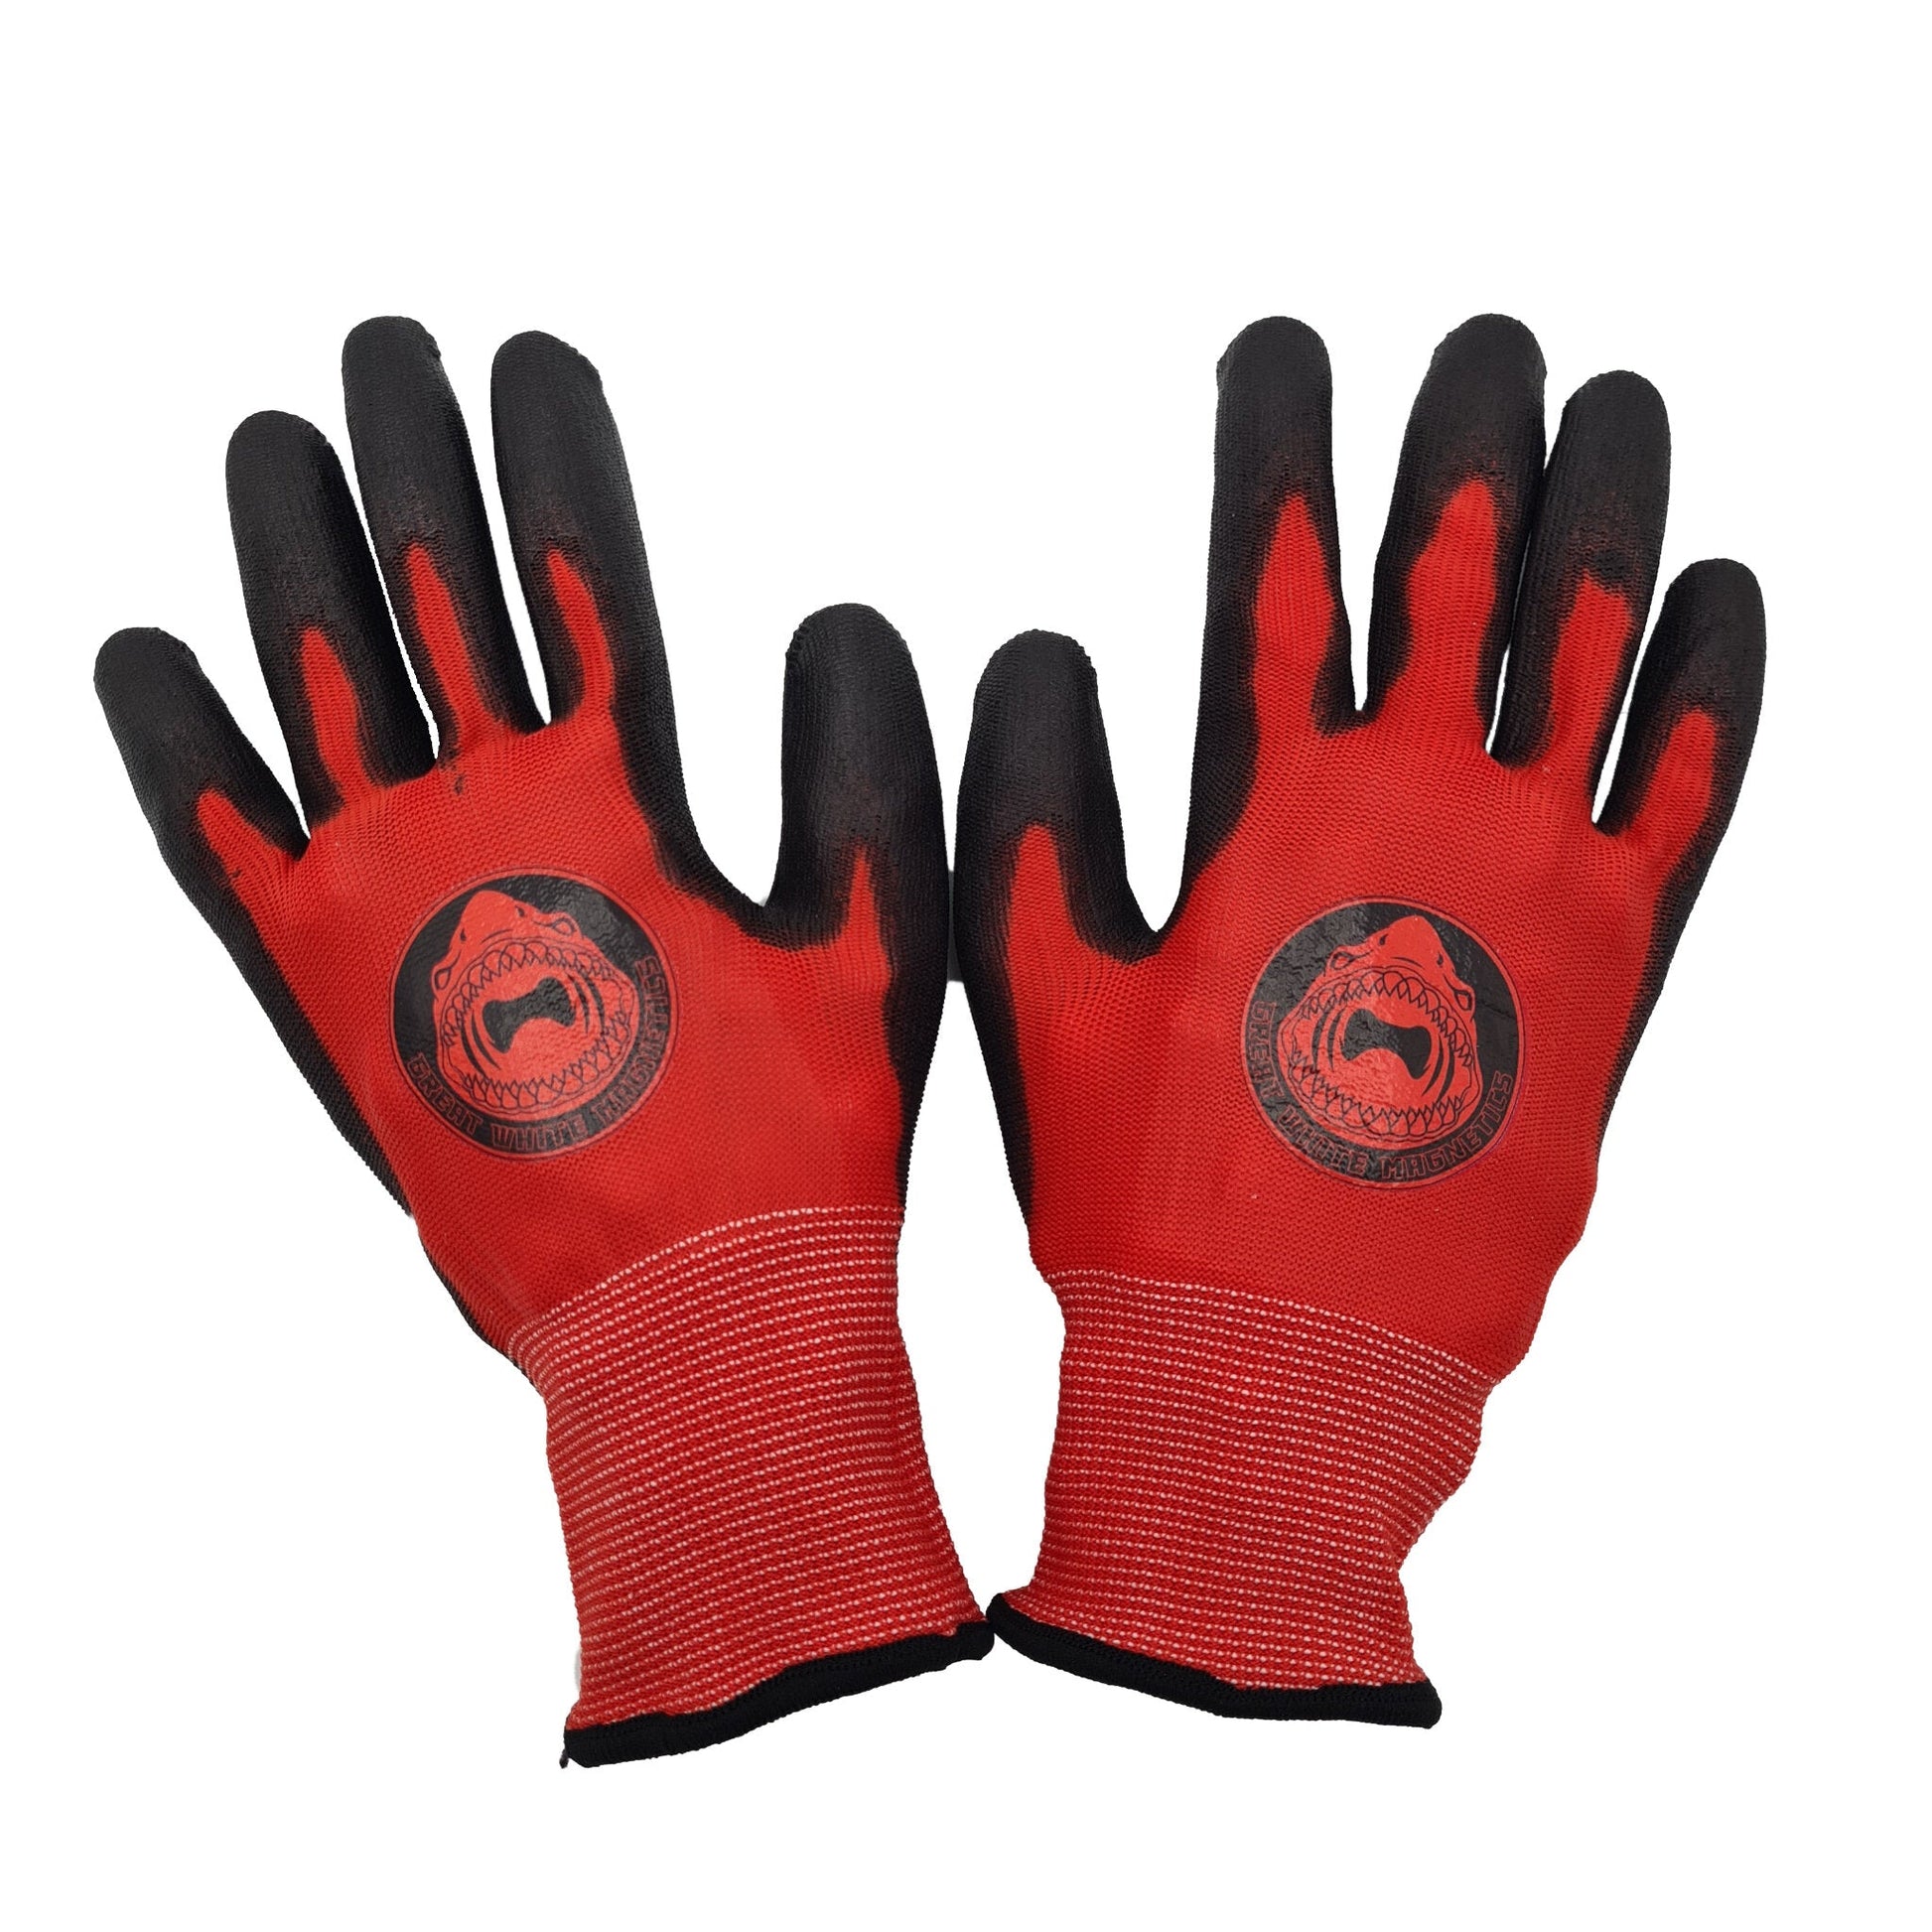 Gloves for magnet fishing